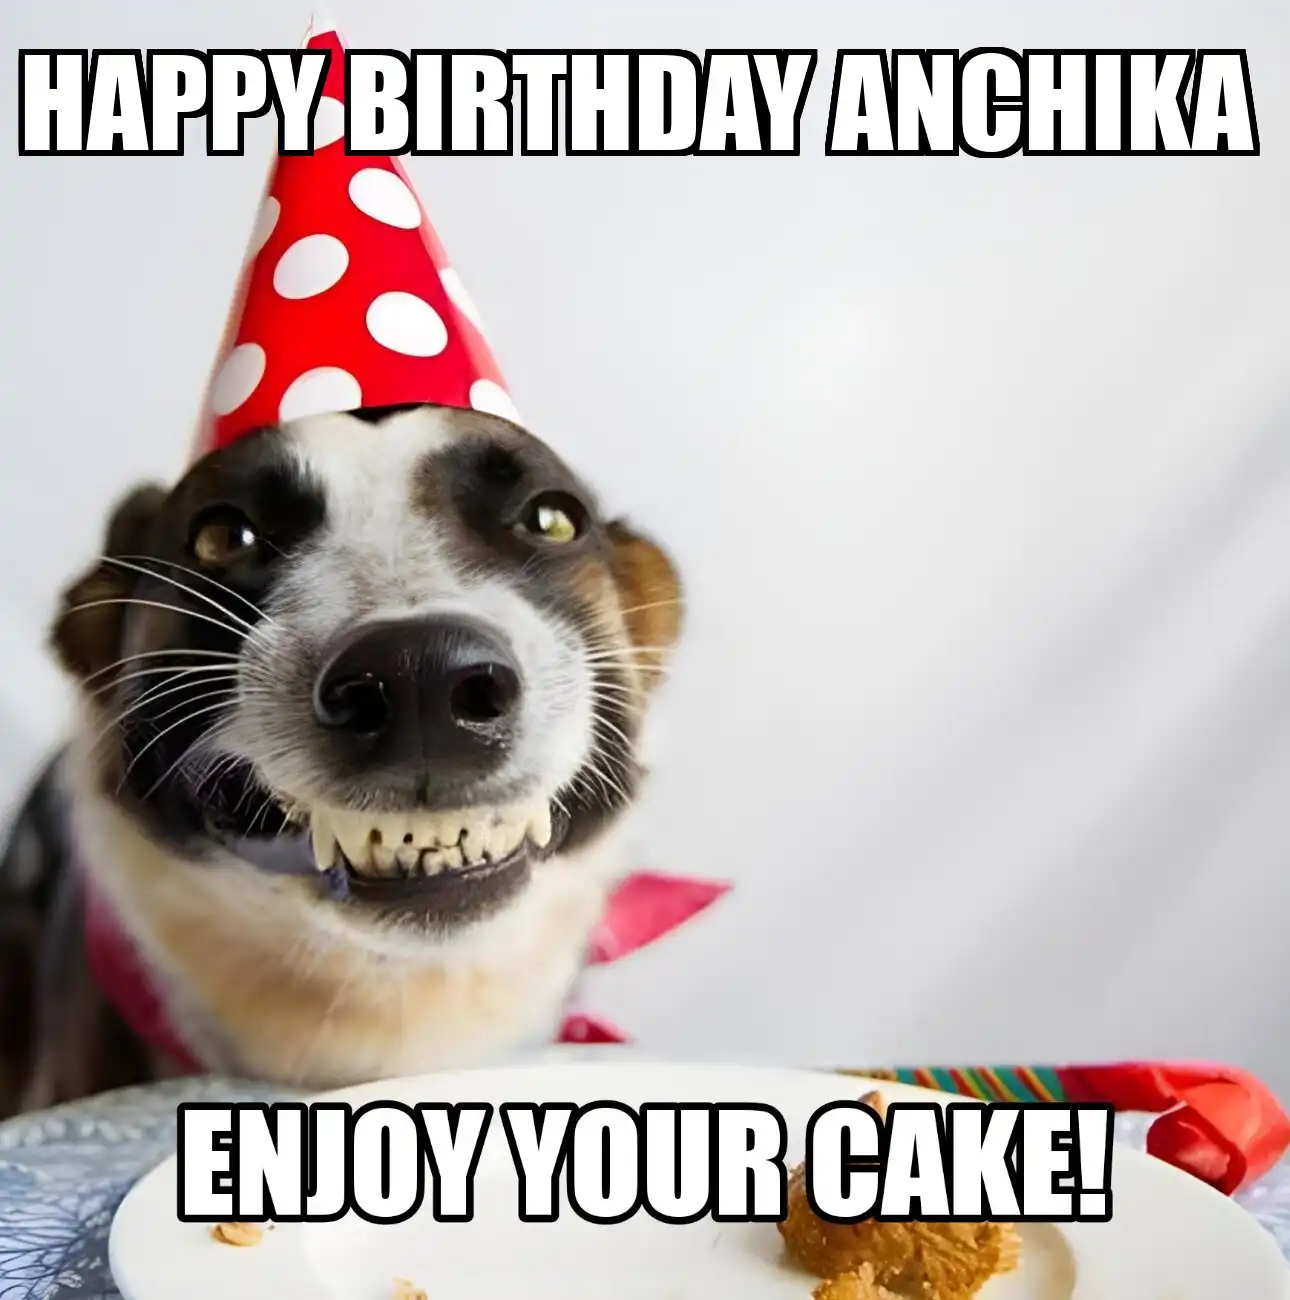 Happy Birthday Anchika Enjoy Your Cake Dog Meme